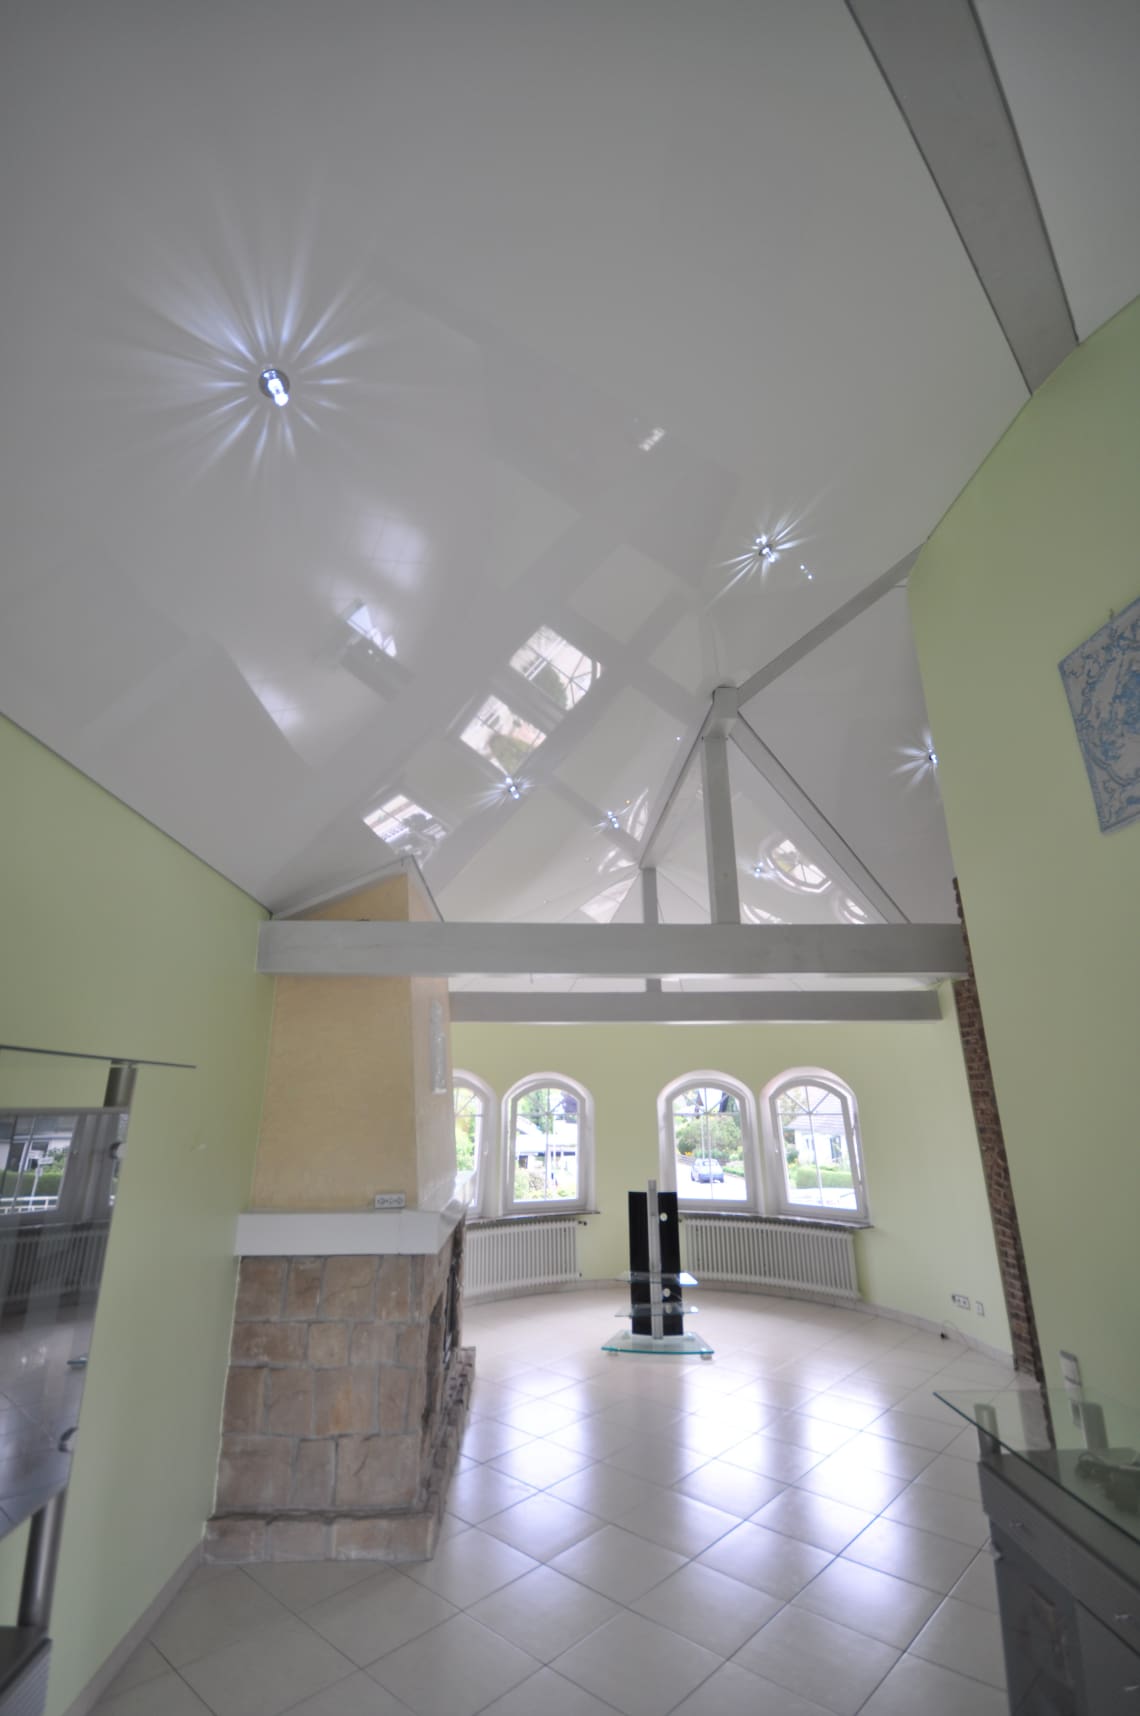 Lackspanndecke im Wohnzimmer mit Dachschräge in weiss Hochglanz. Beleuchtung mit LED-Einbaustrahlern und Swarovski Sternenhimmel